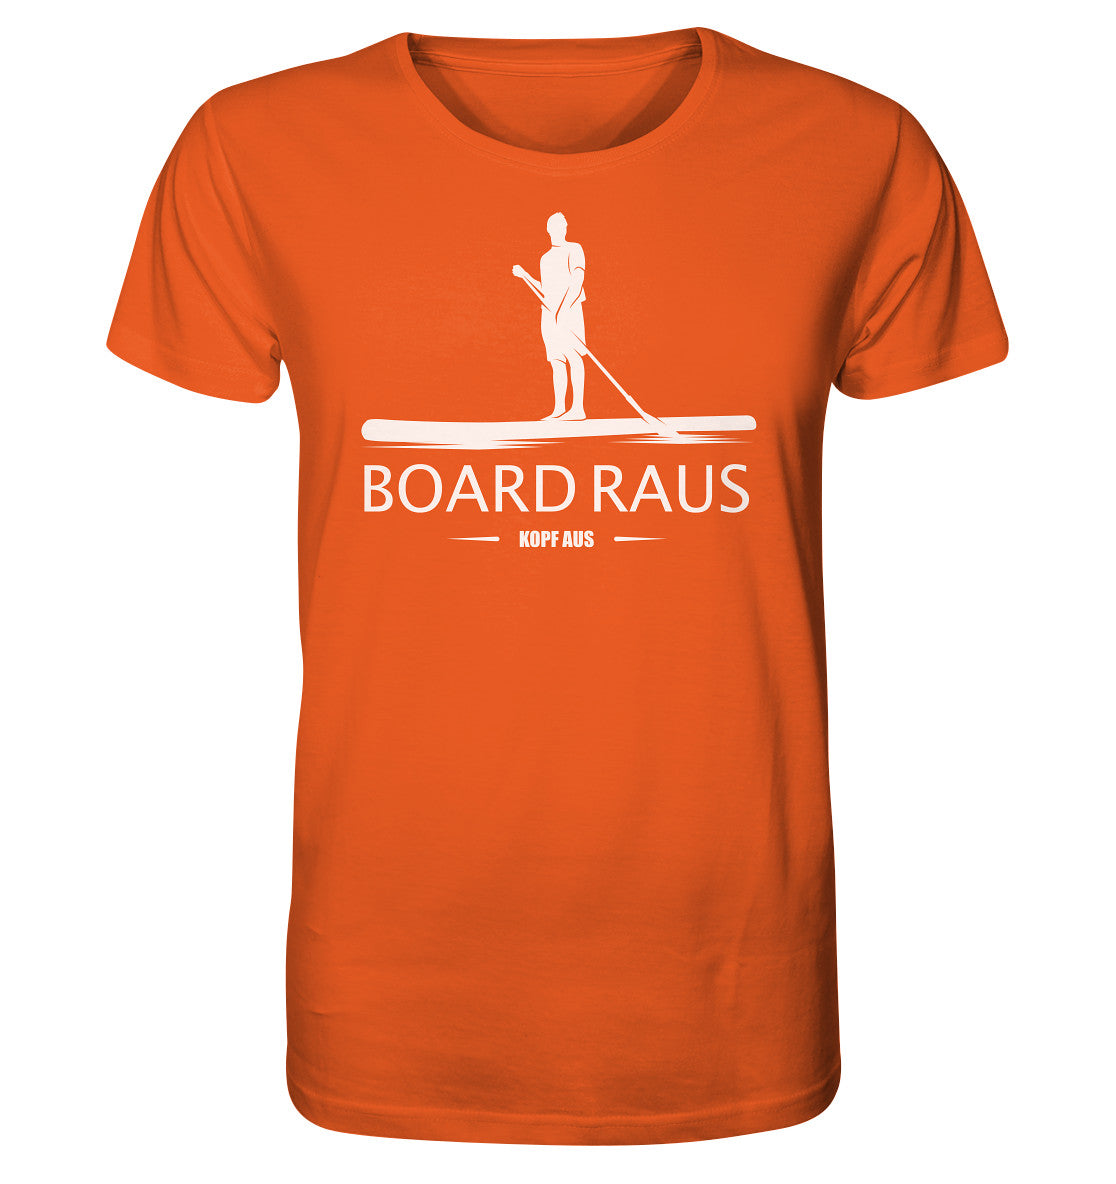 Board raus - Kopf aus! - Organic Shirt